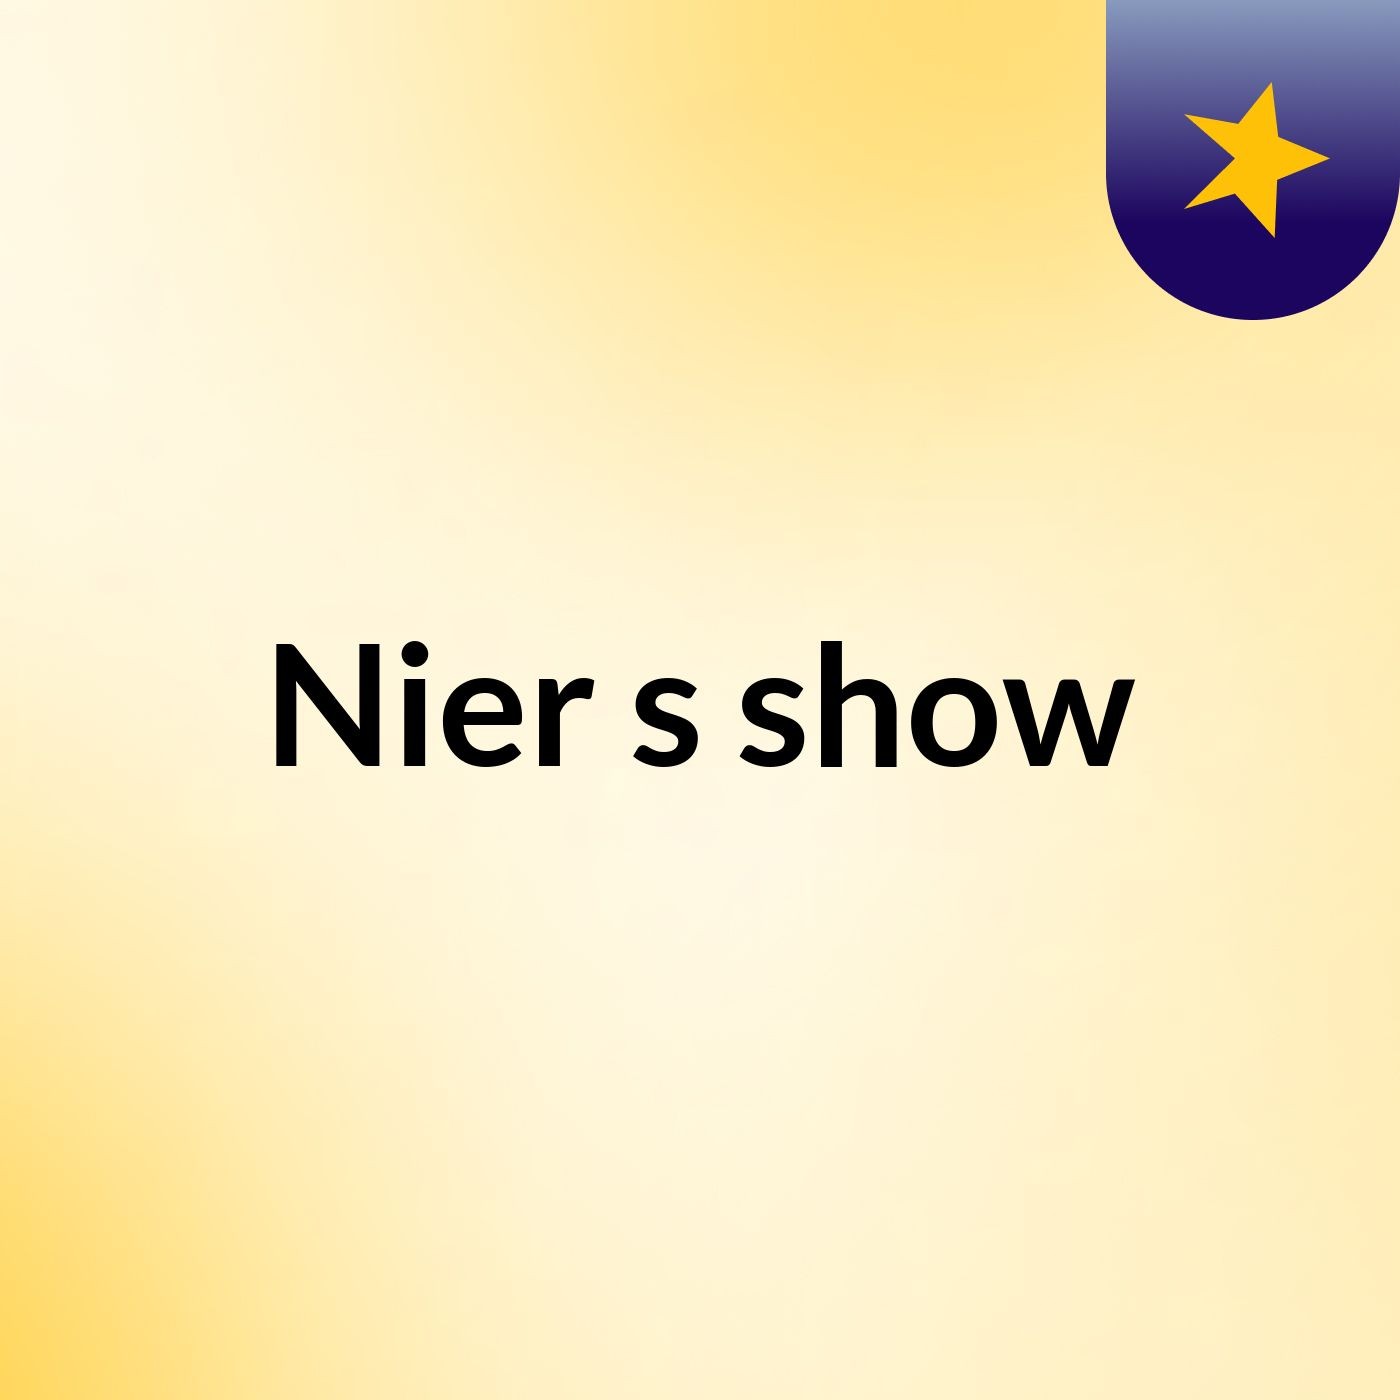 Nier's show